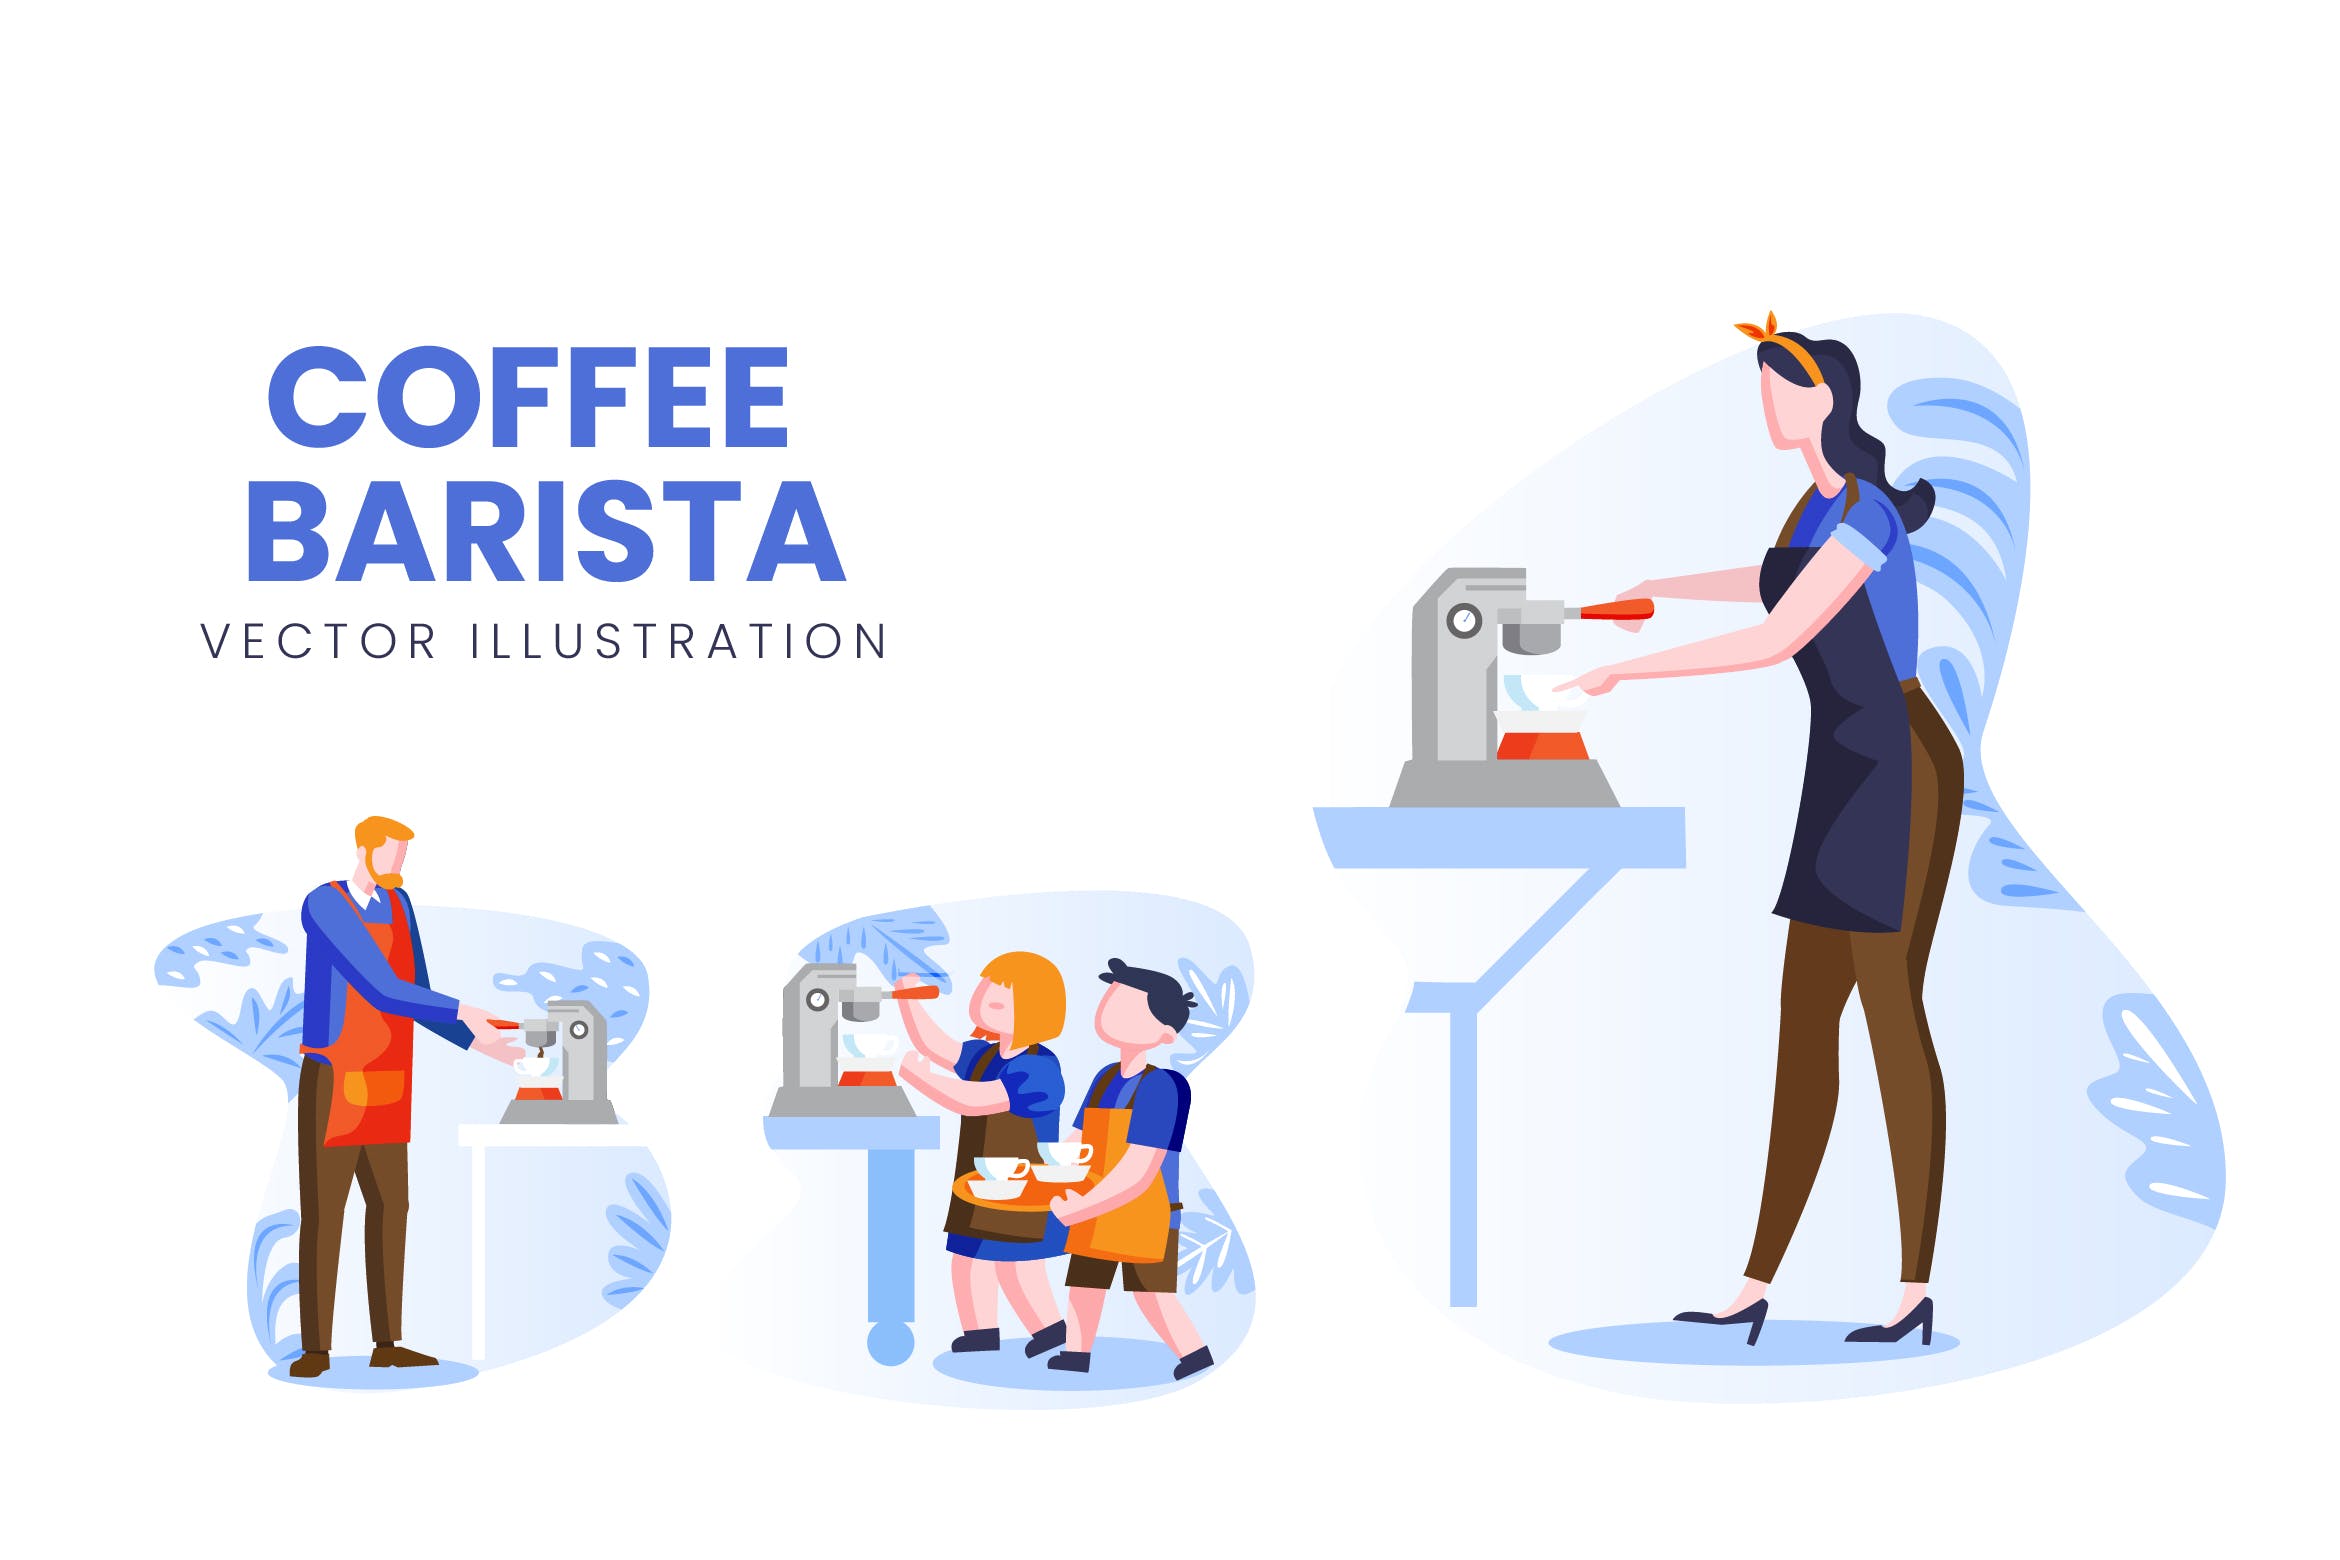 咖啡师人物形象素材中国精选手绘插画矢量素材 Coffee Barista Vector Character Set插图